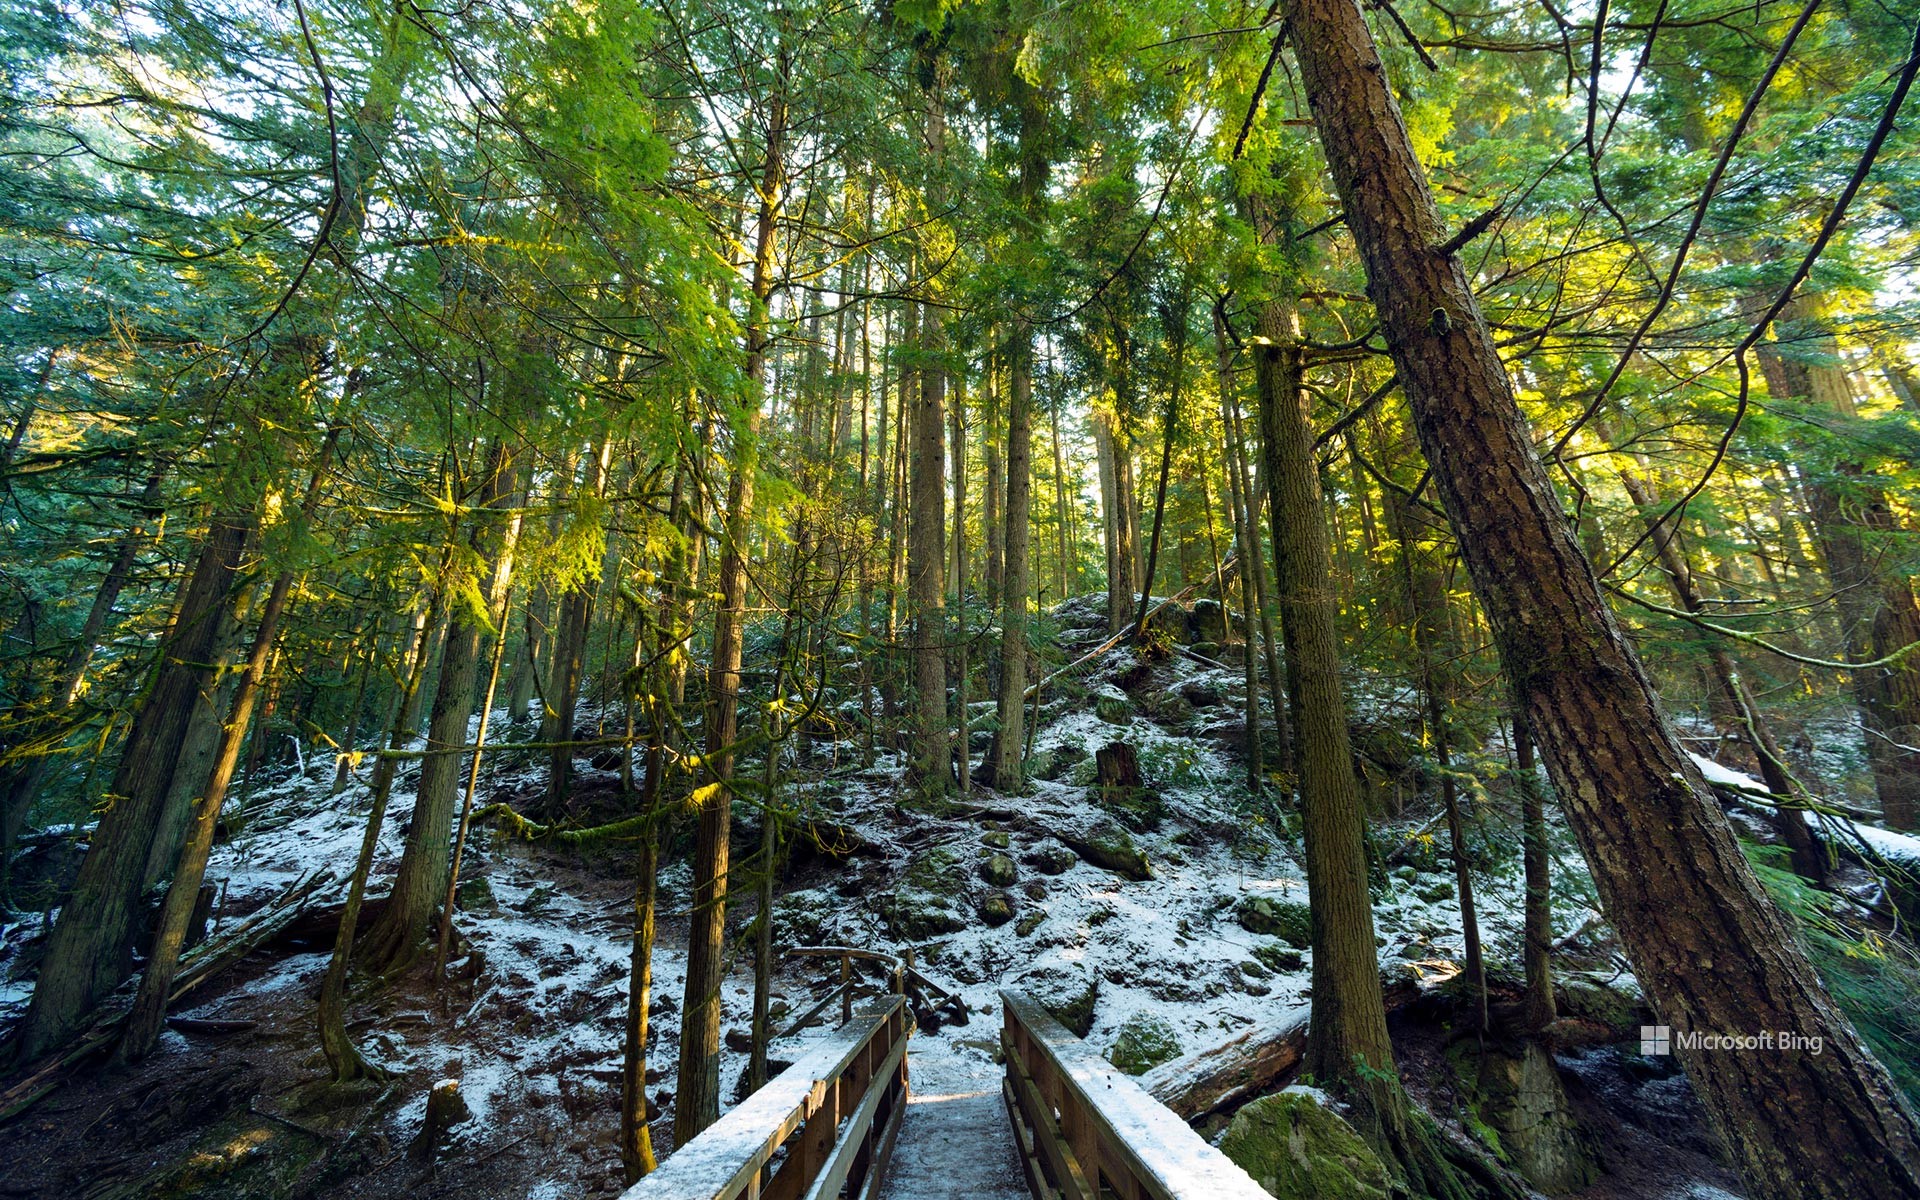 Rainforest trails along Cypress Creek, West Vancouver, BC